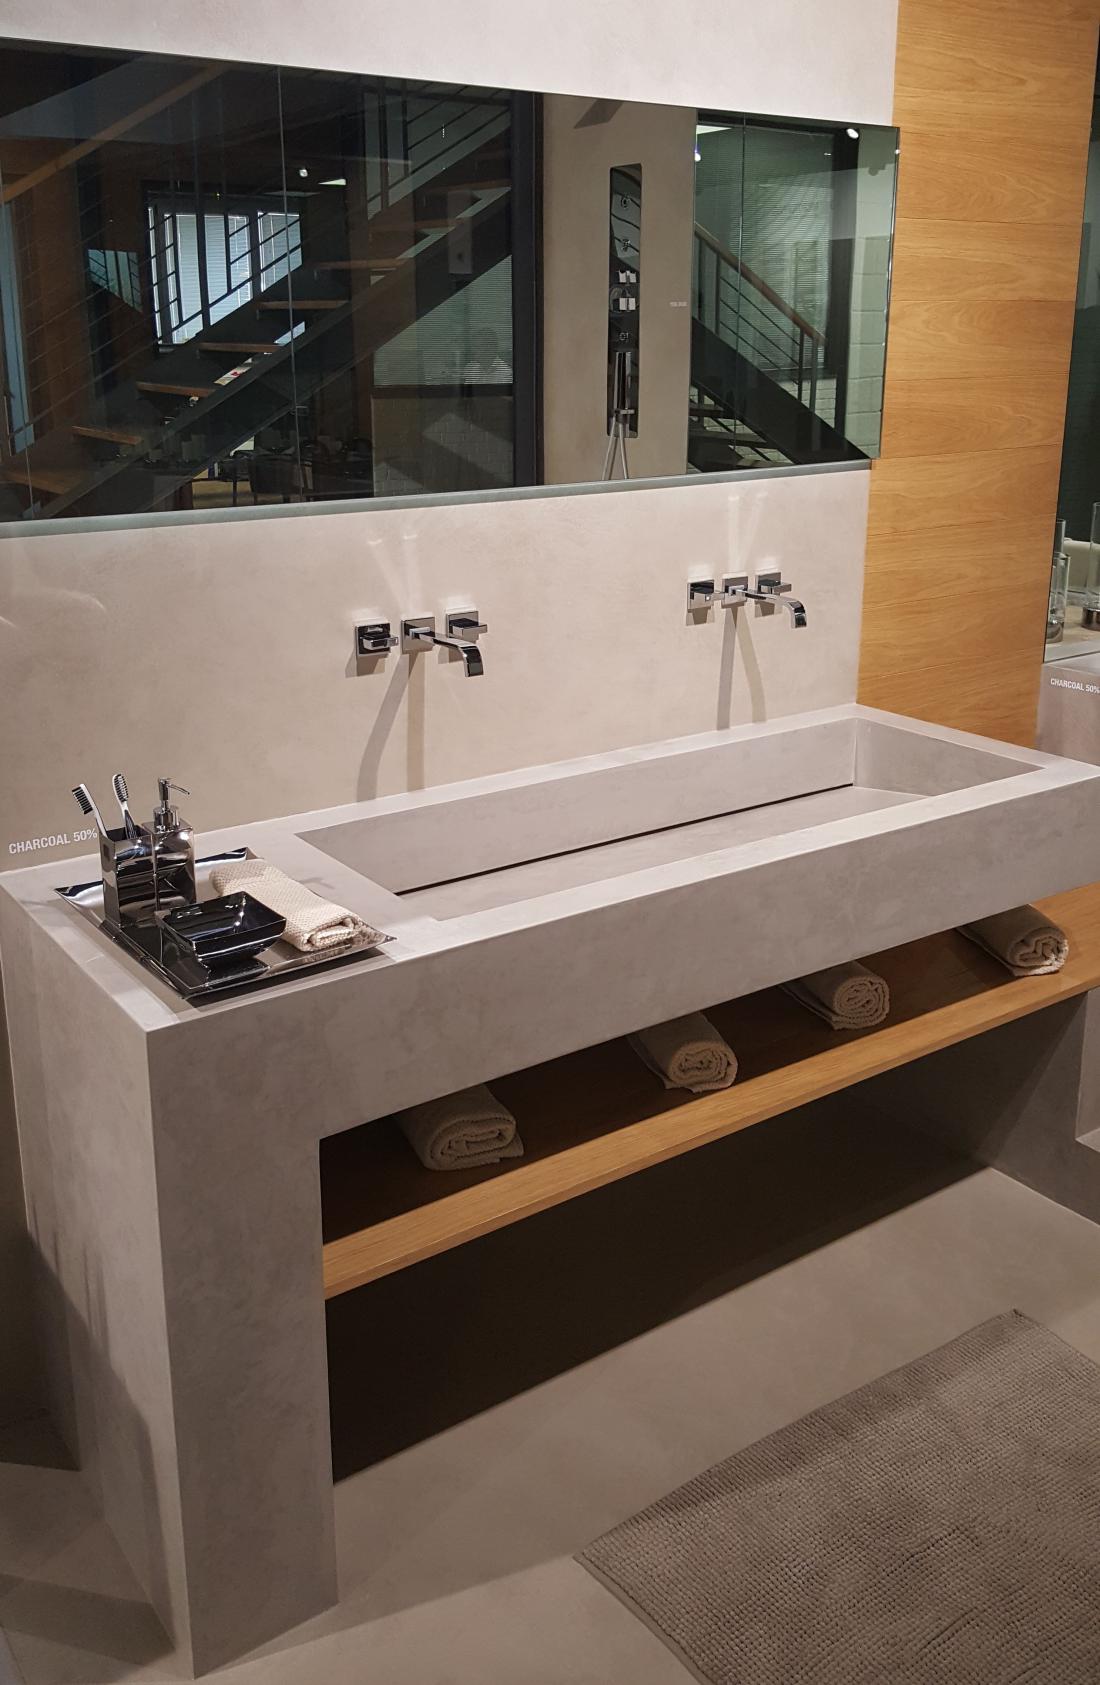 Dekorativni beton da umivalniku v kopalnici surov videz. Microtopping je vodoodporen in zato primeren za uporabo v prostorih, kjer je vlaga.